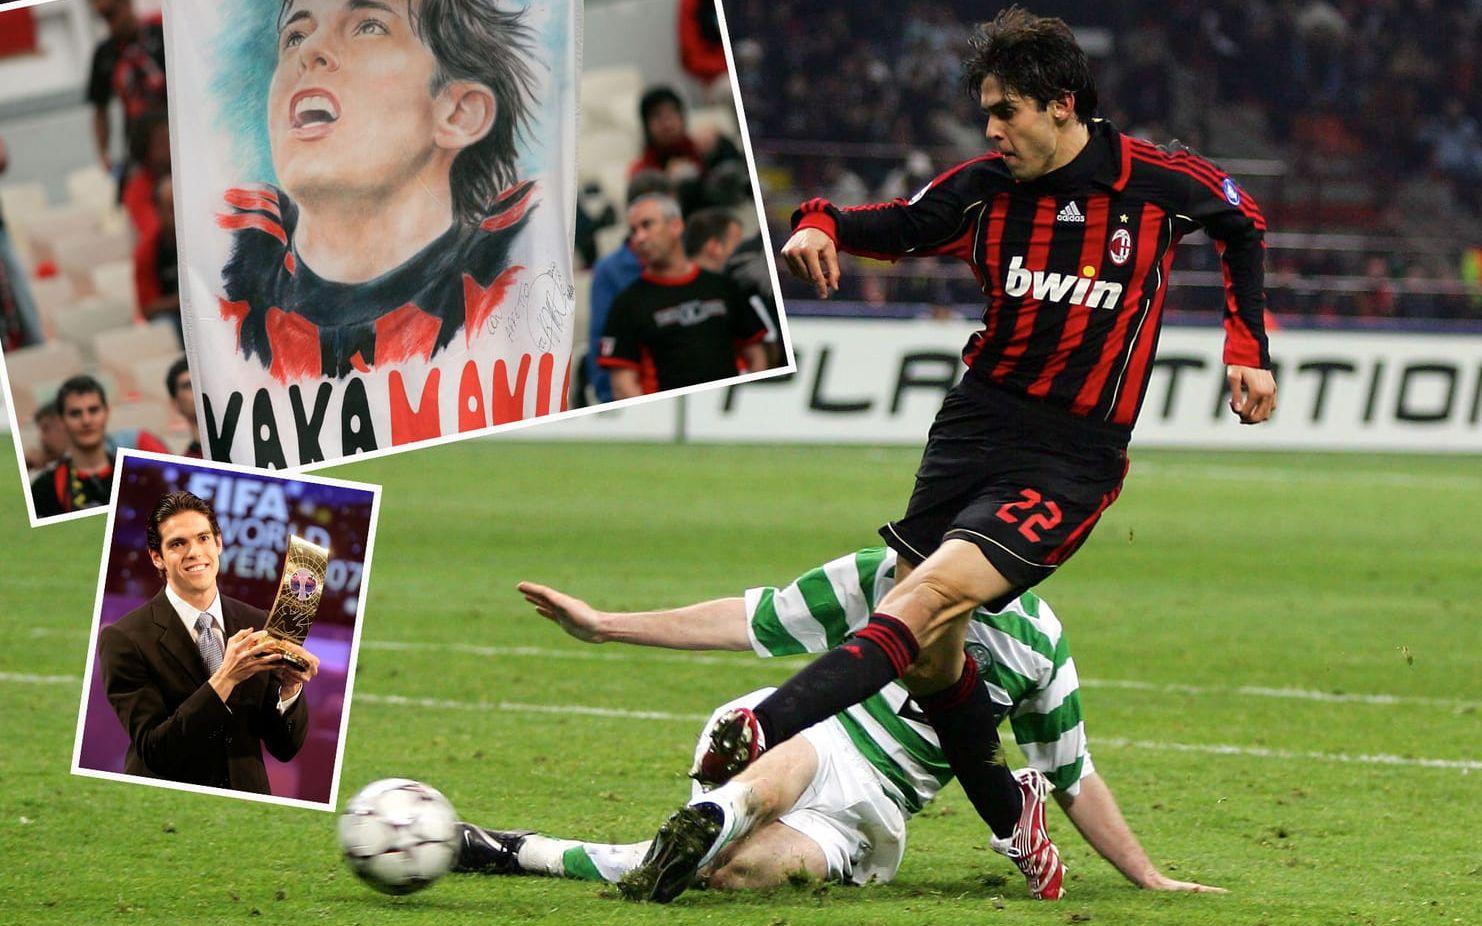 2007. Vinnare: Kaká, Brasilien och Milan. Brassen vann före två spelare som har dominerat världsfotbollen de senaste åren, Lionel Messi och Cristiano Ronaldo. Foto: Bildbyrån